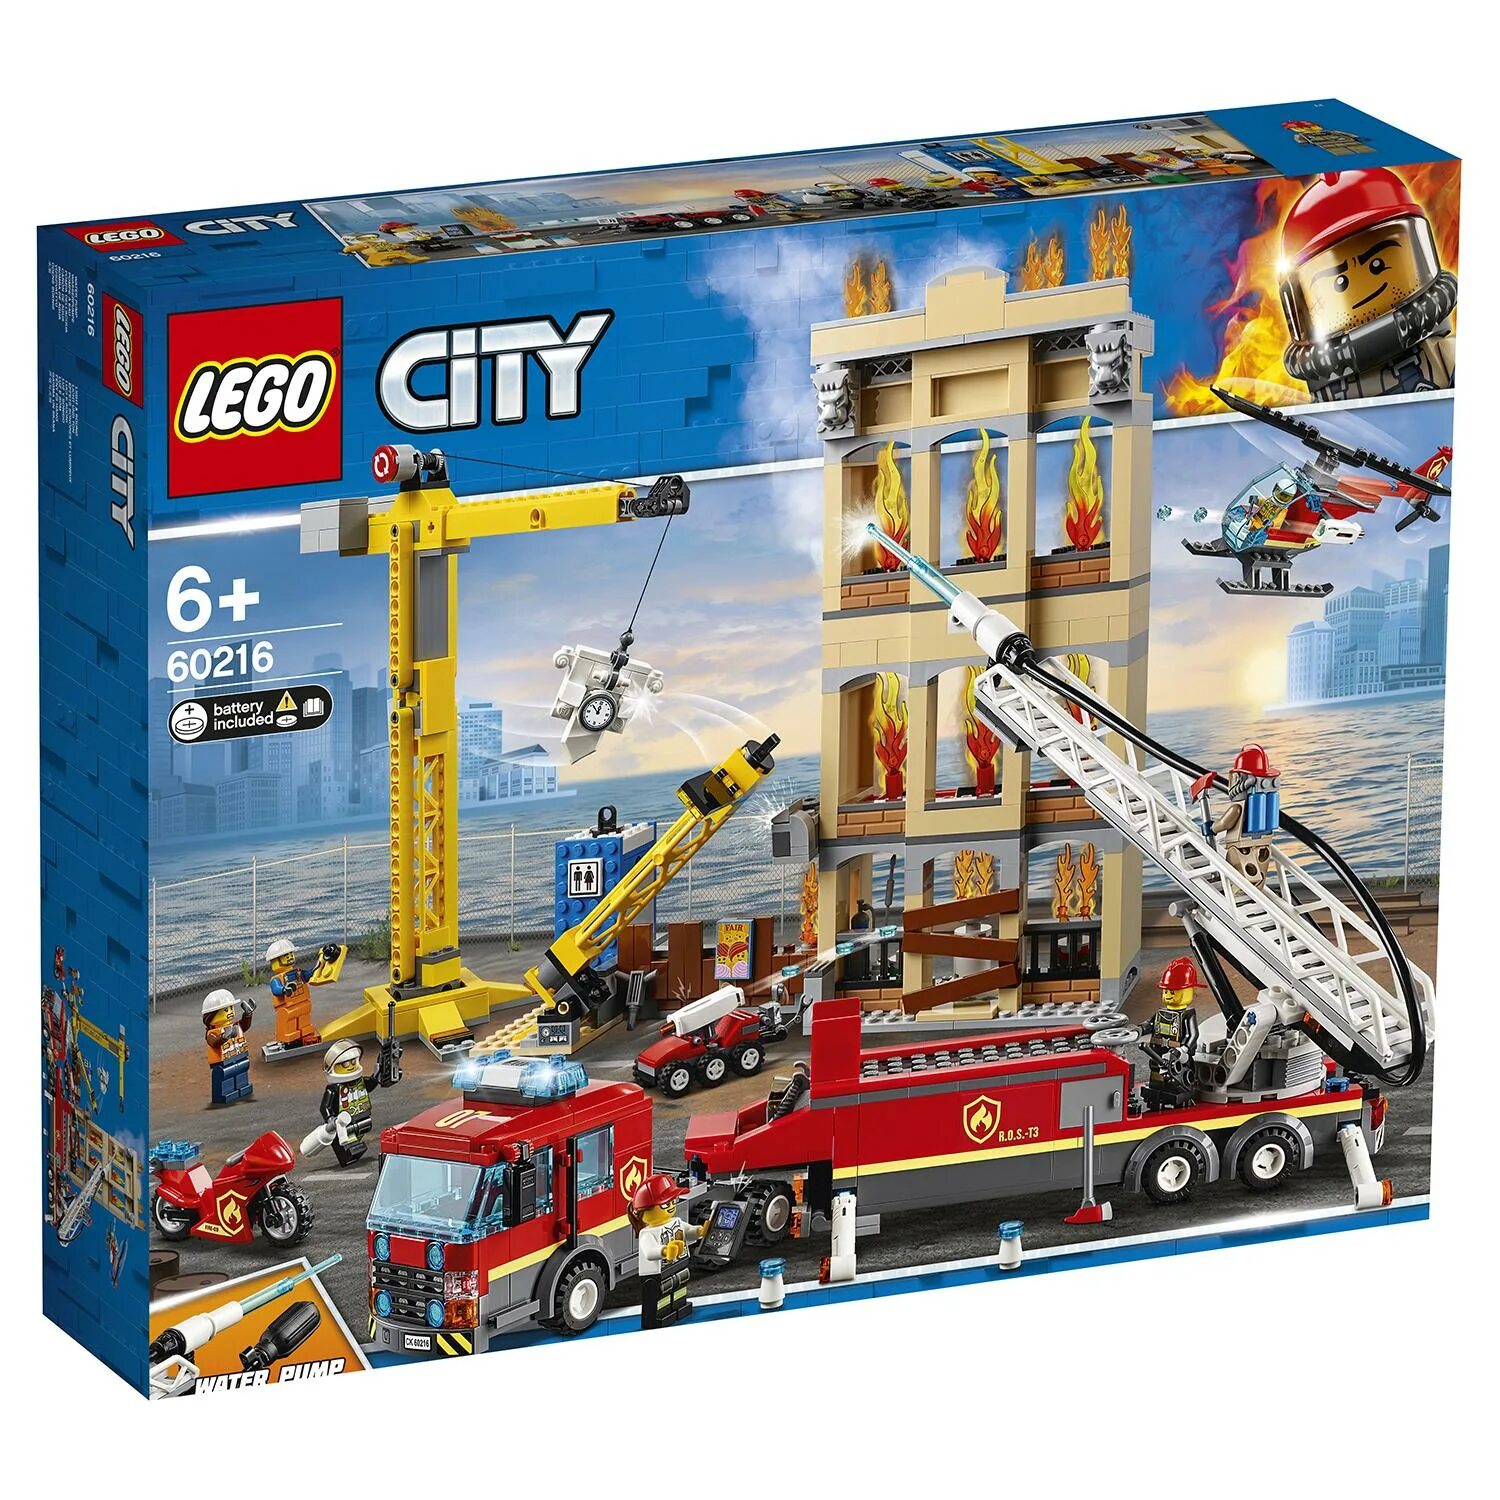 Лего Сити 60216. LEGO City 60216. LEGO City Fire 60216. Лего Сити пожарная 60216. Сити пожарная